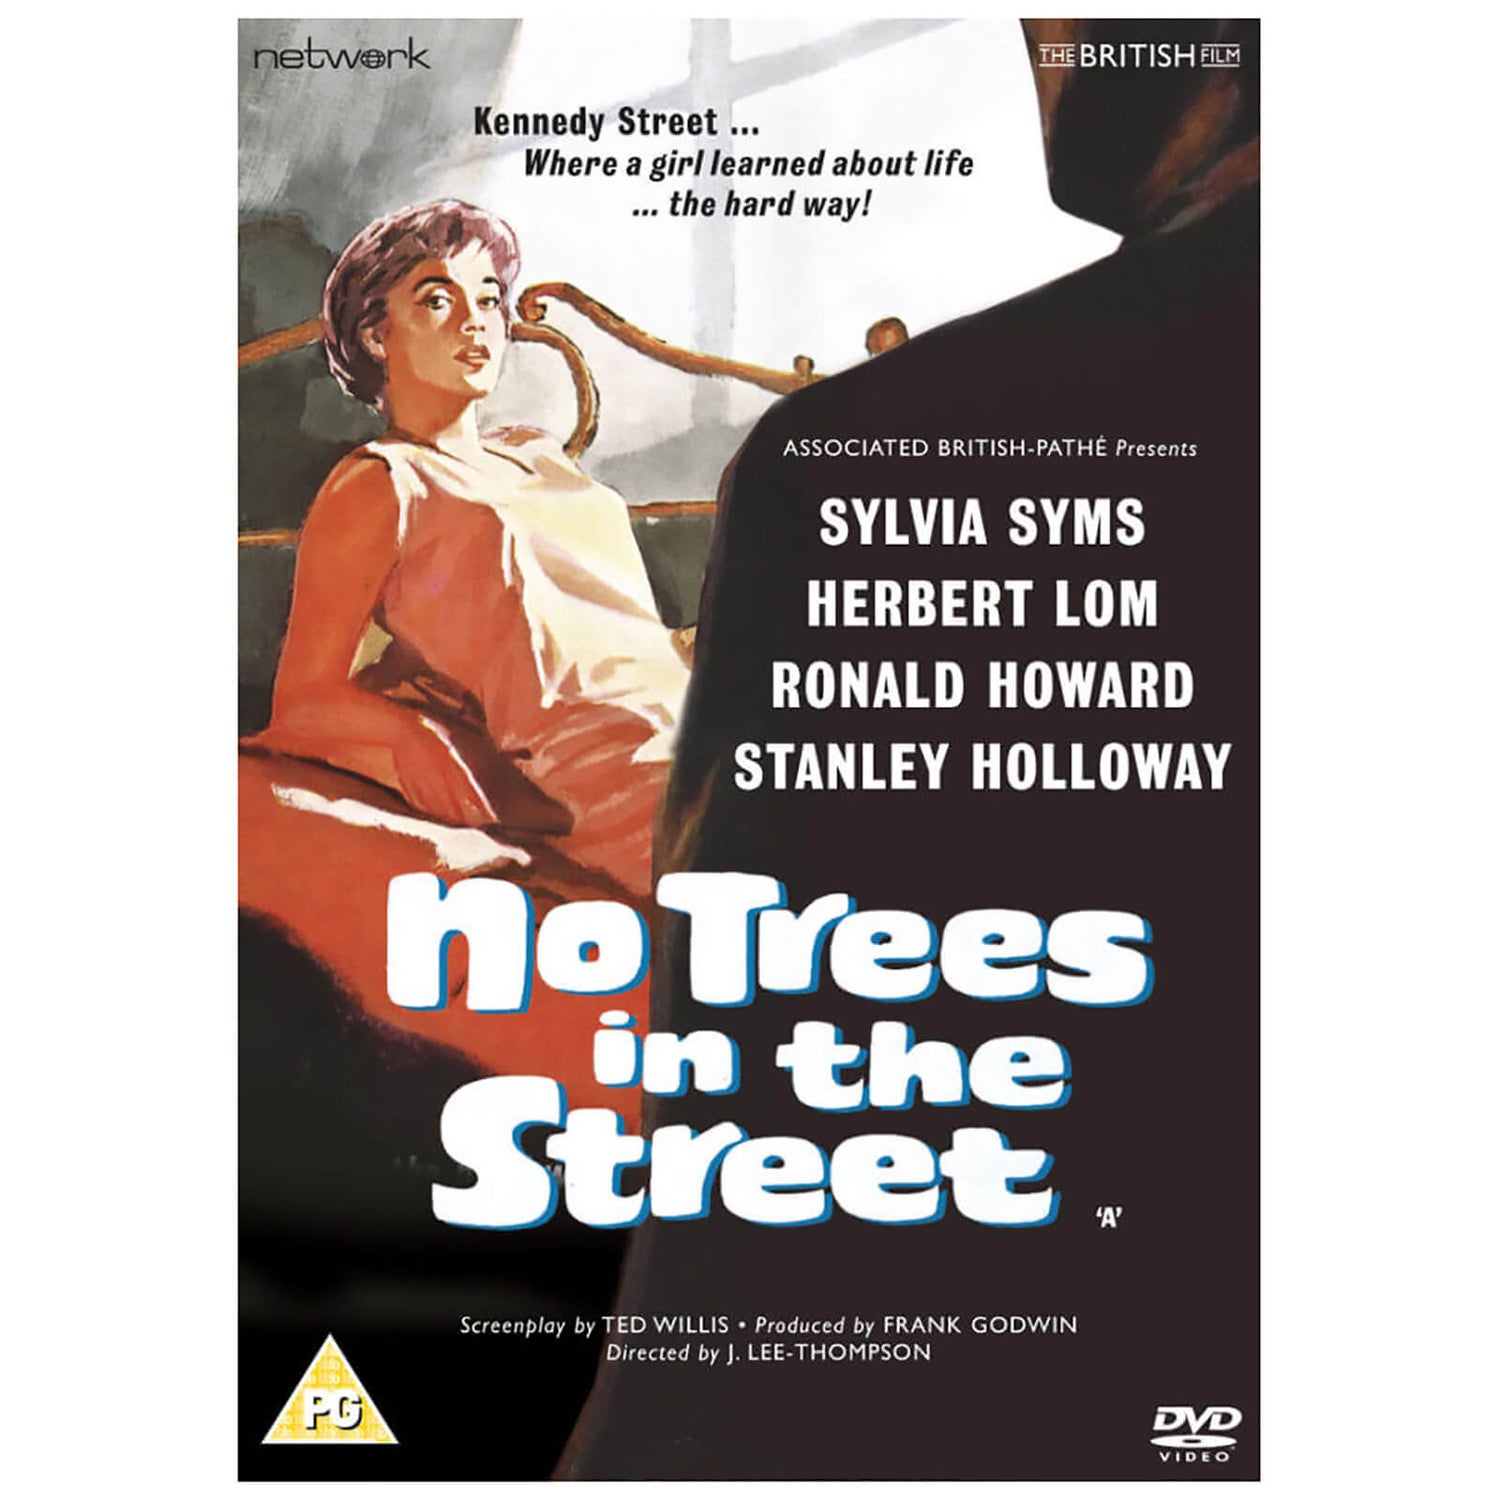 Pas d'arbres dans la rue